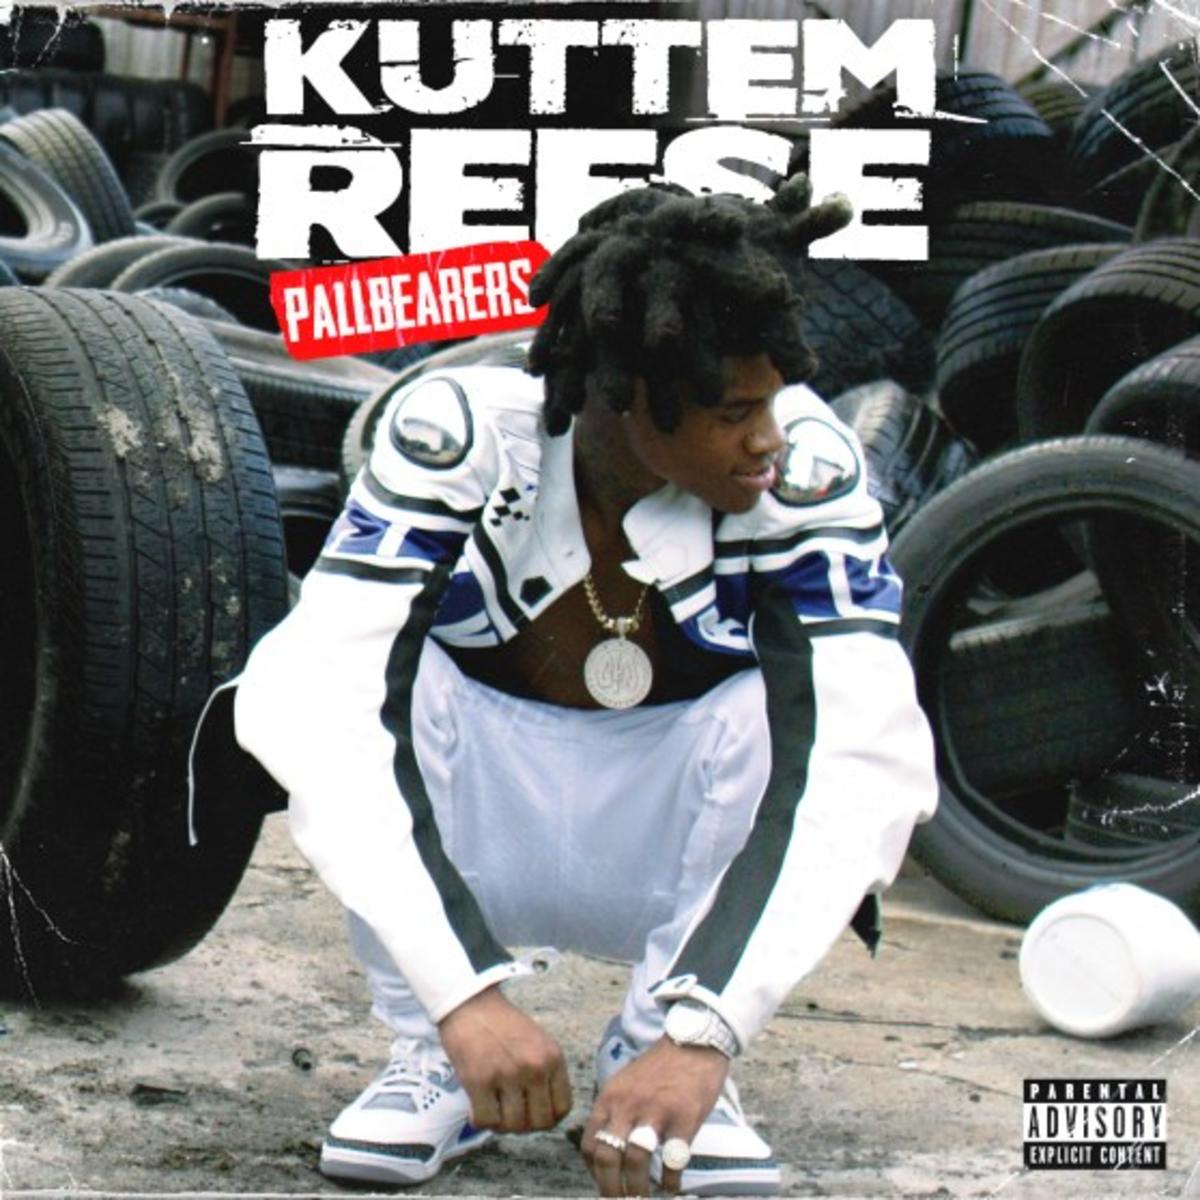 DOWNLOAD MP3: Kuttem Reese - Pallbearers